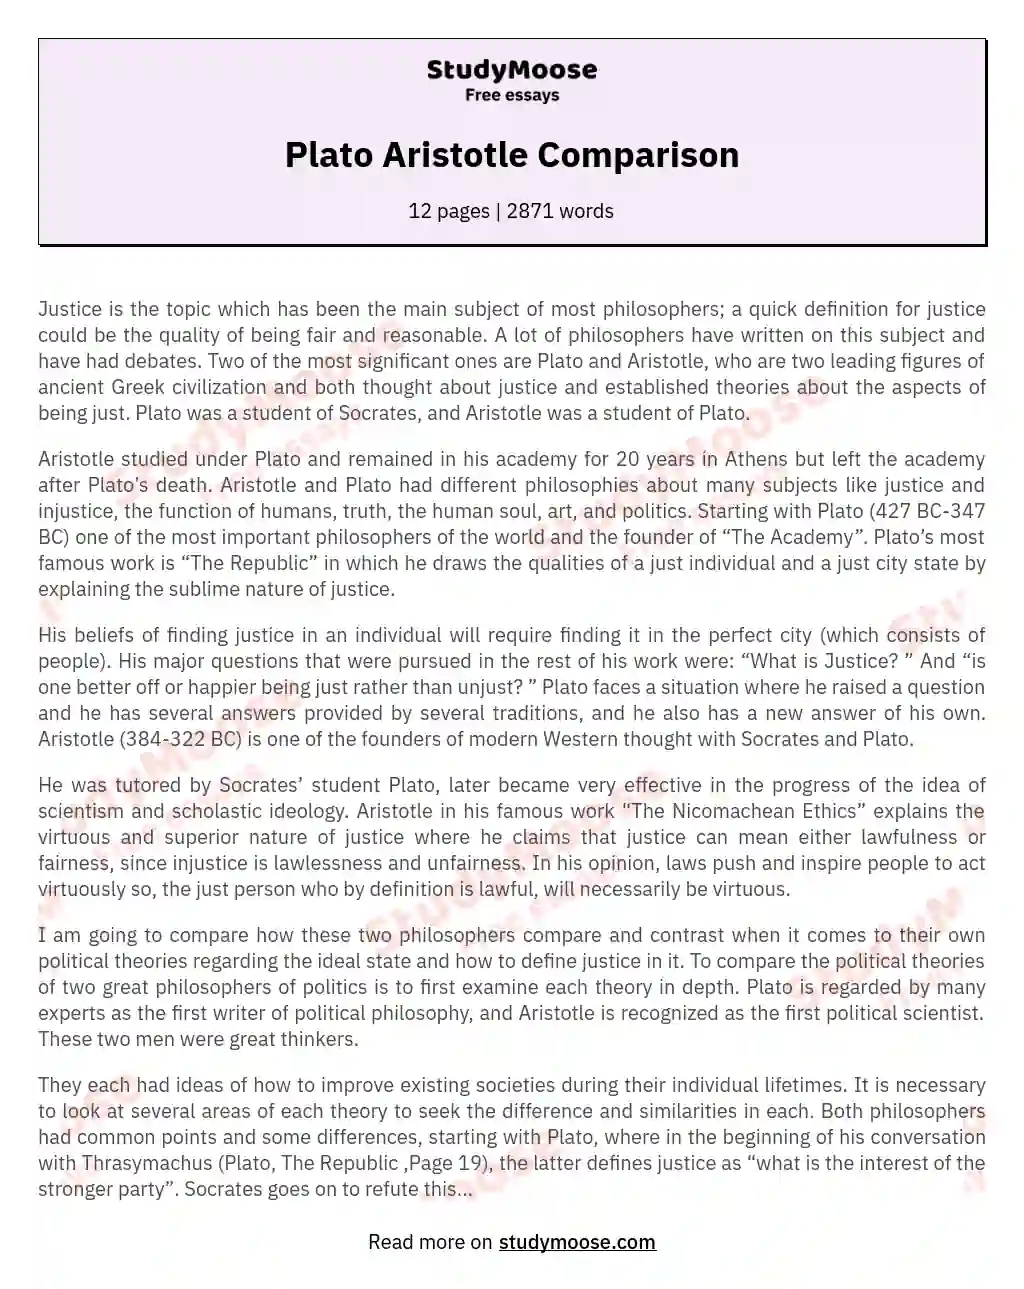 Plato Aristotle Comparison essay